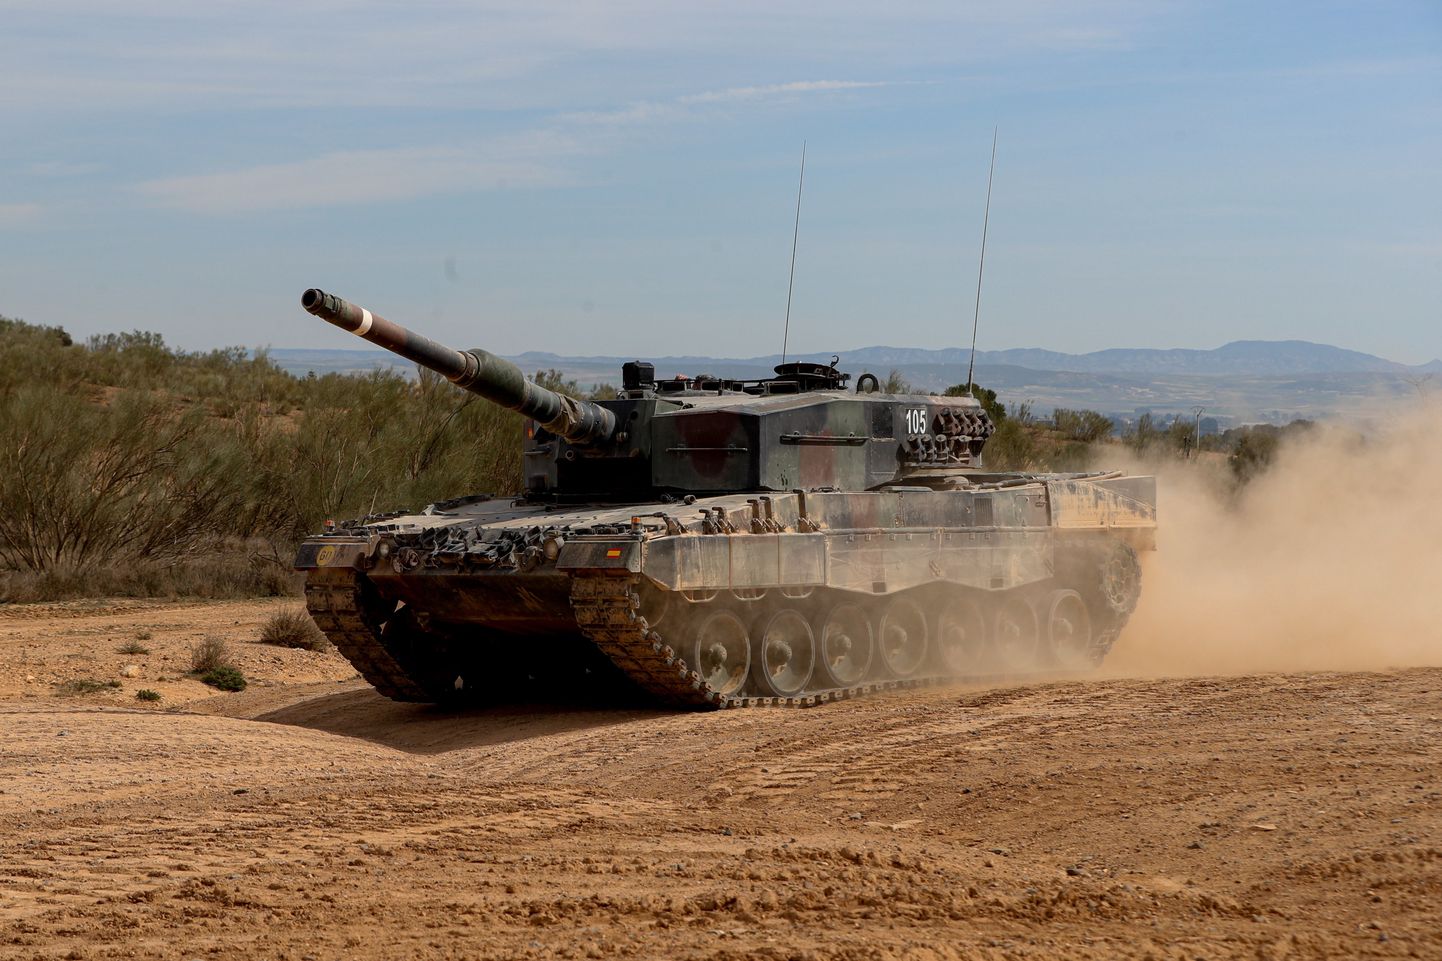 Ukrainlased harjutasid Saksa Leopard 2 tanke kasutama Hispaanias. Eelmisel aastal langesid mõned sõjamasinad venelaste kätte, kes on neist teinud nüüd katseeksemplarid, mille peal katsetada oma tankivastast laskemoona.